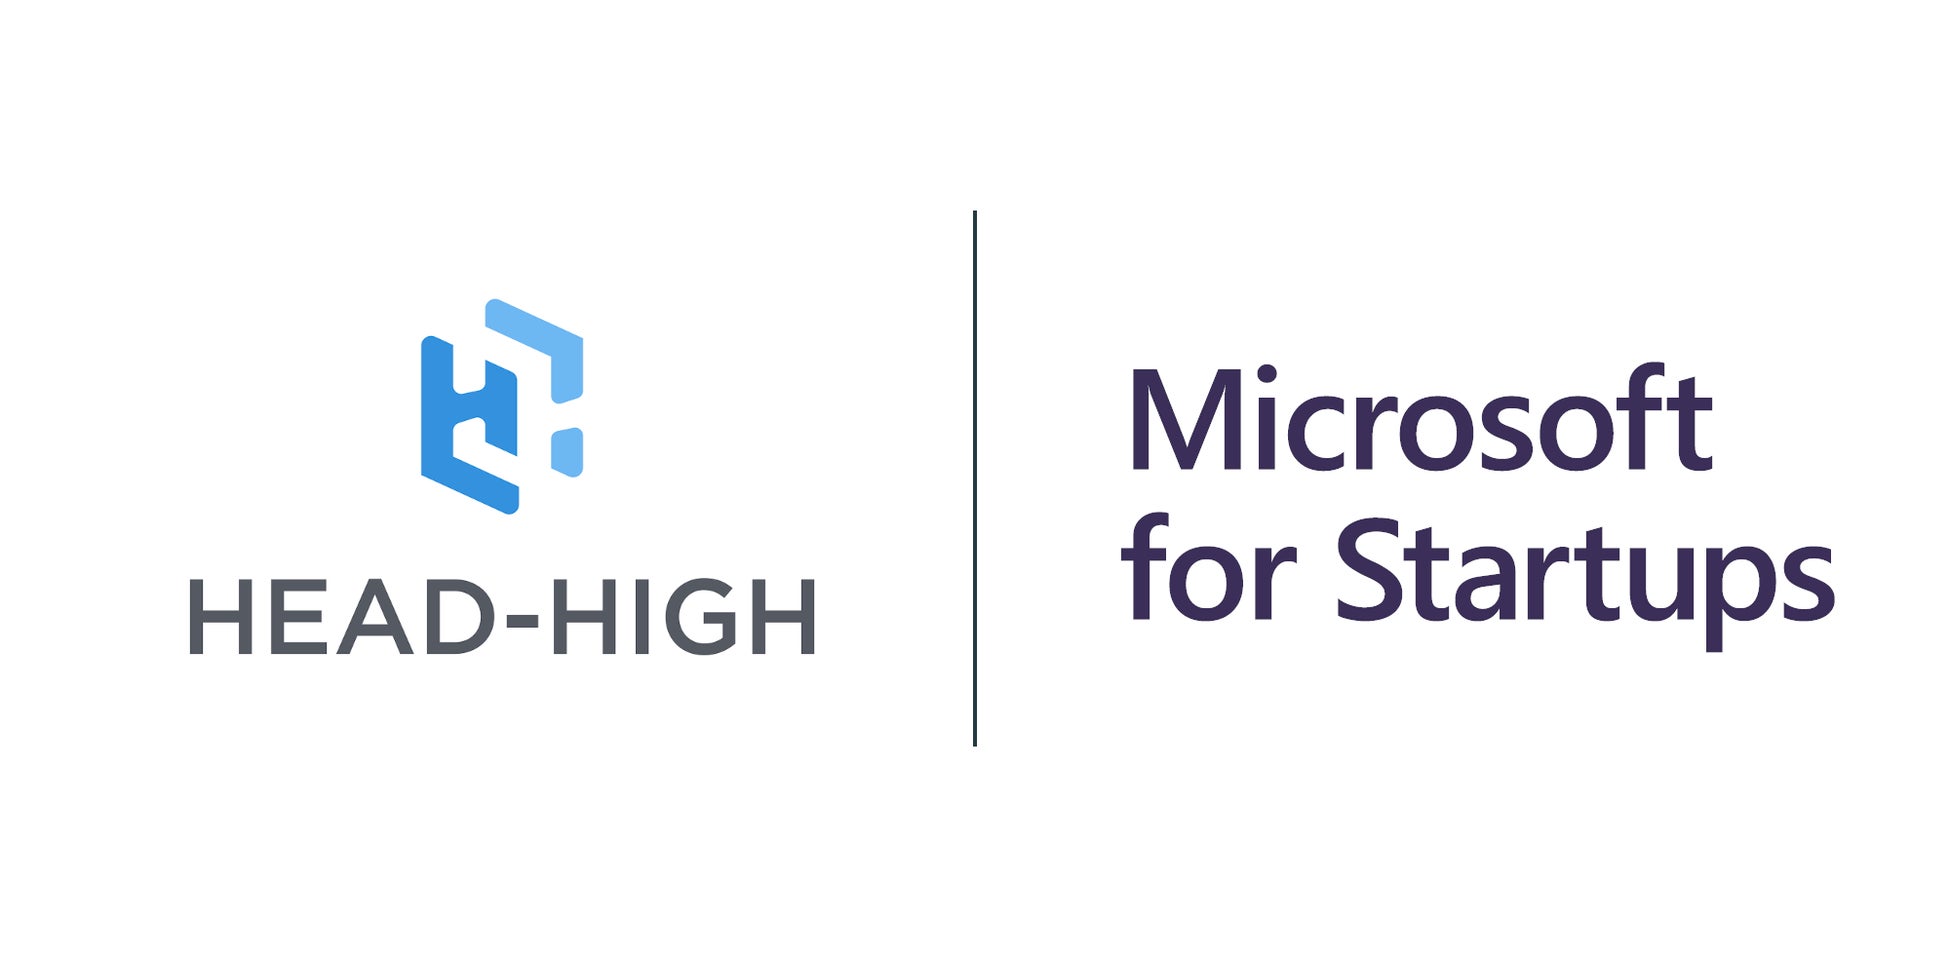 株式会社ヘッドハイ、マイクロソフト社のスタートアップ支援プログラム「Microsoft for Startups」に採択。Azureを活用し、ゲームへ